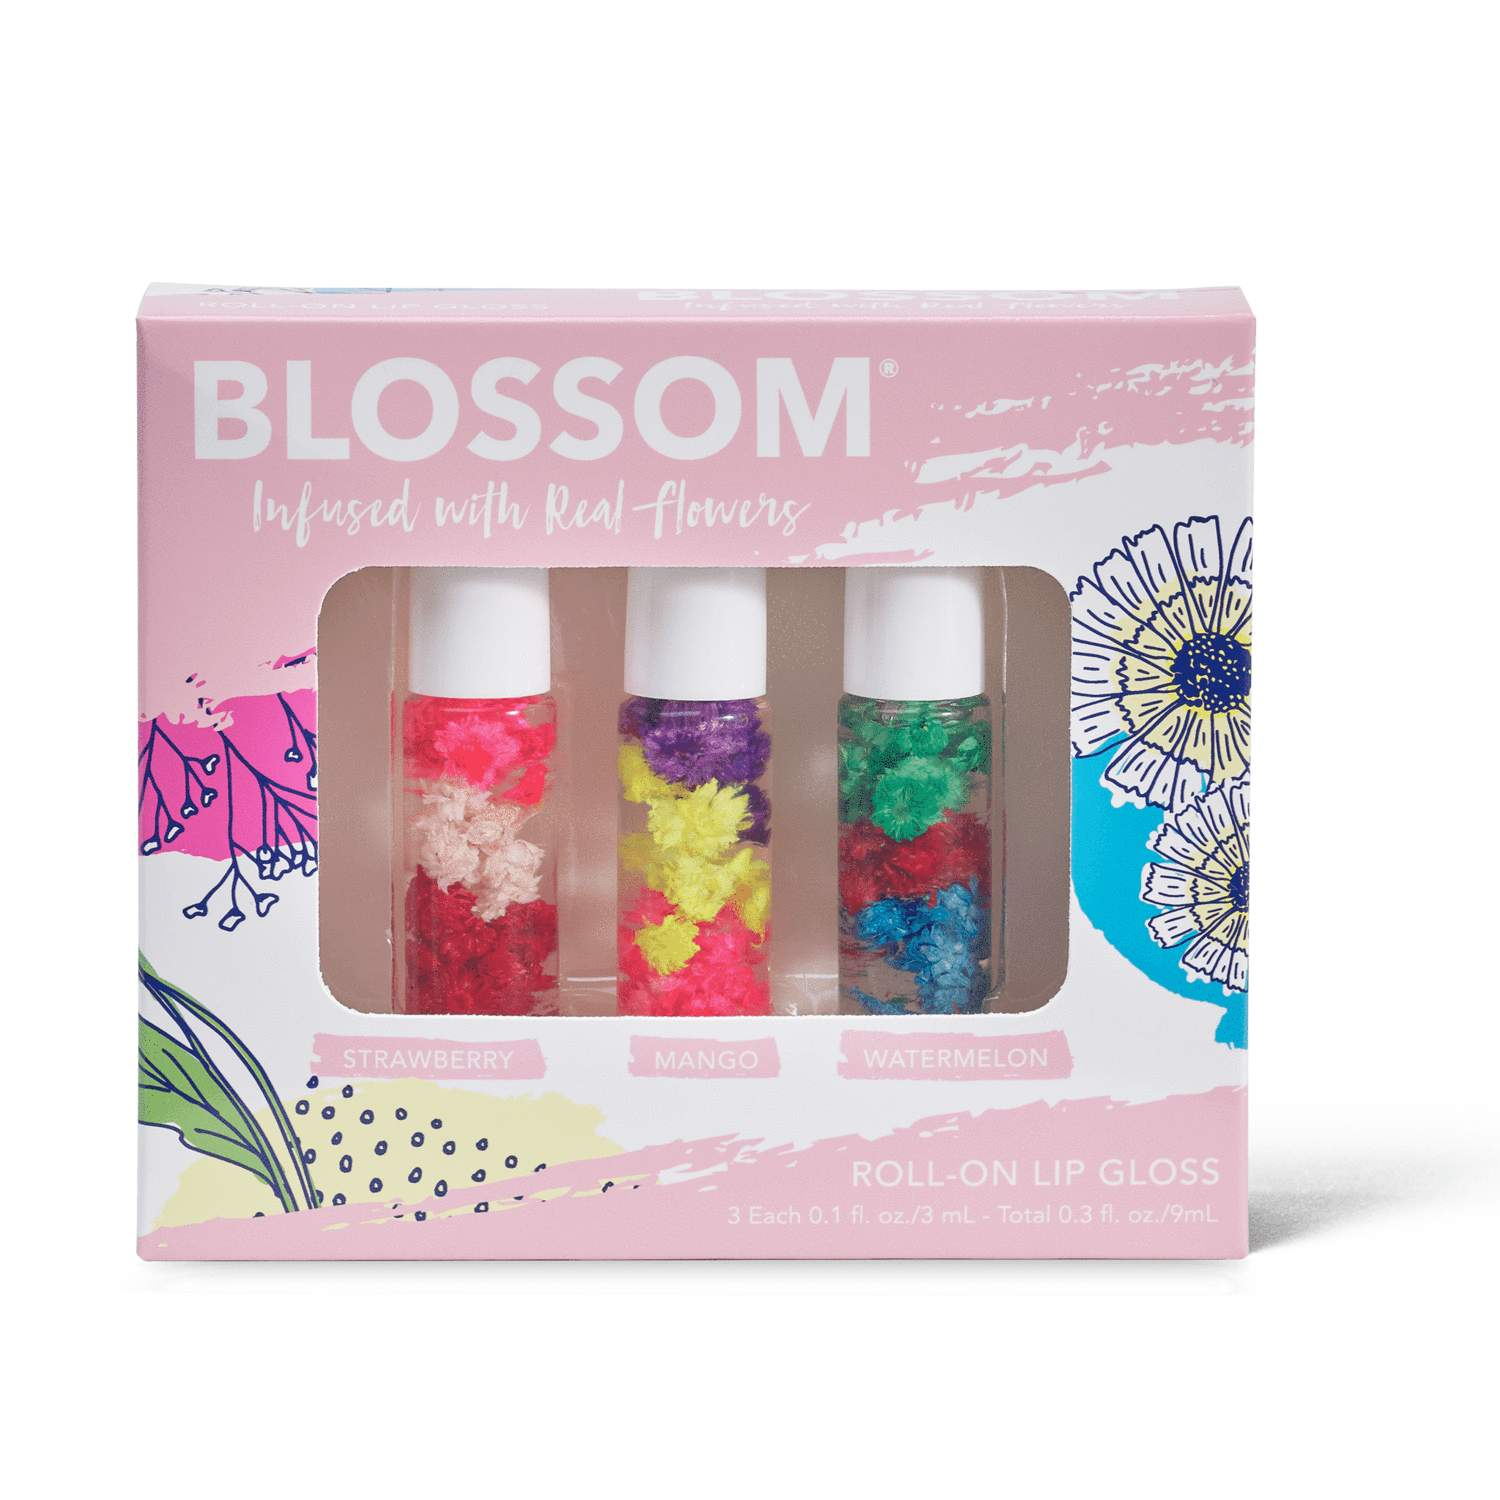 Blossom 3-Piece Set Mini Roll-On Lip Gloss .1 fl oz Each Bottle-Blossom-Blossom_ Gift Set's,Blossom_ Roll on Lip Gloss's,Brand_Blossom,Collection_Gifts,Collection_Makeup,Gifts_Under 25,Makeup_Lip,Makeup_Lip Gloss